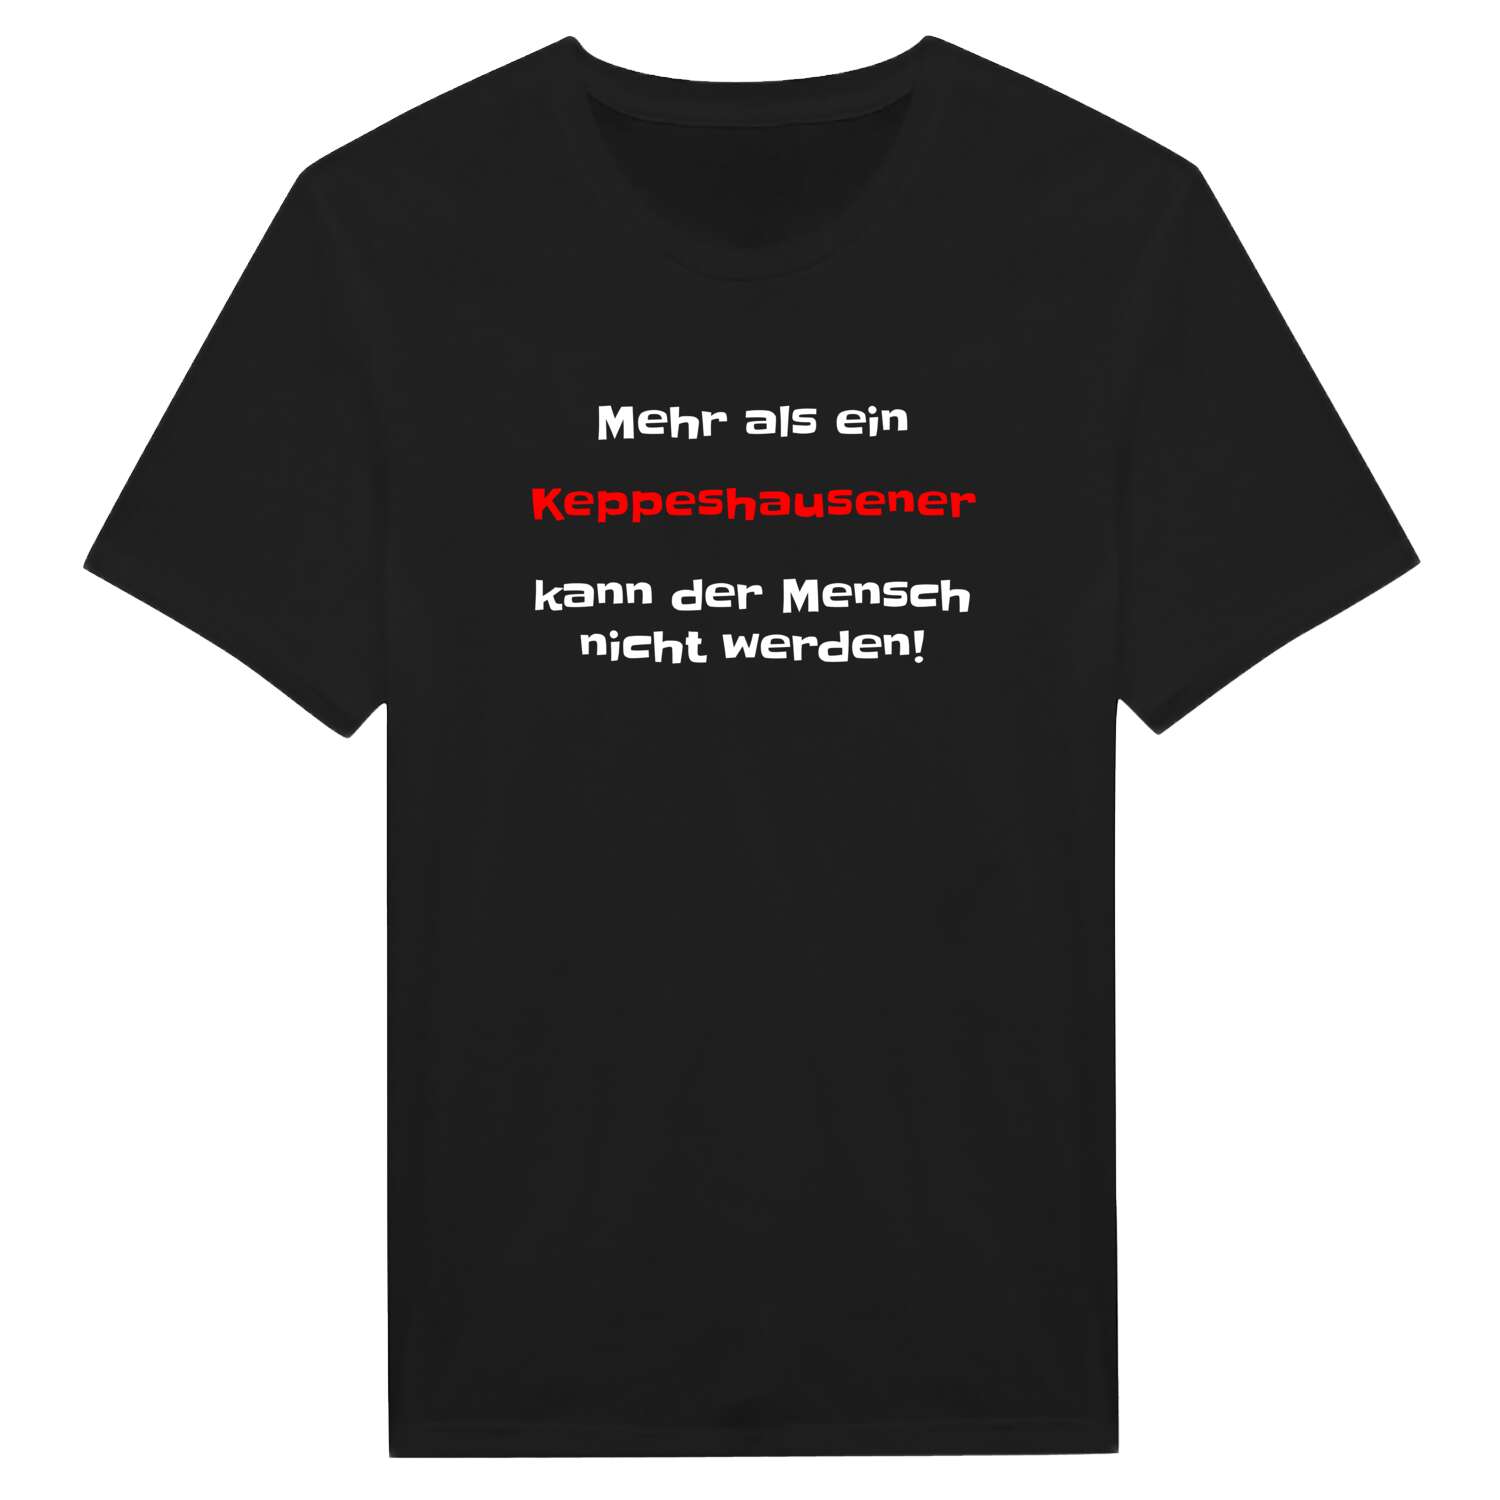 Keppeshausen T-Shirt »Mehr als ein«